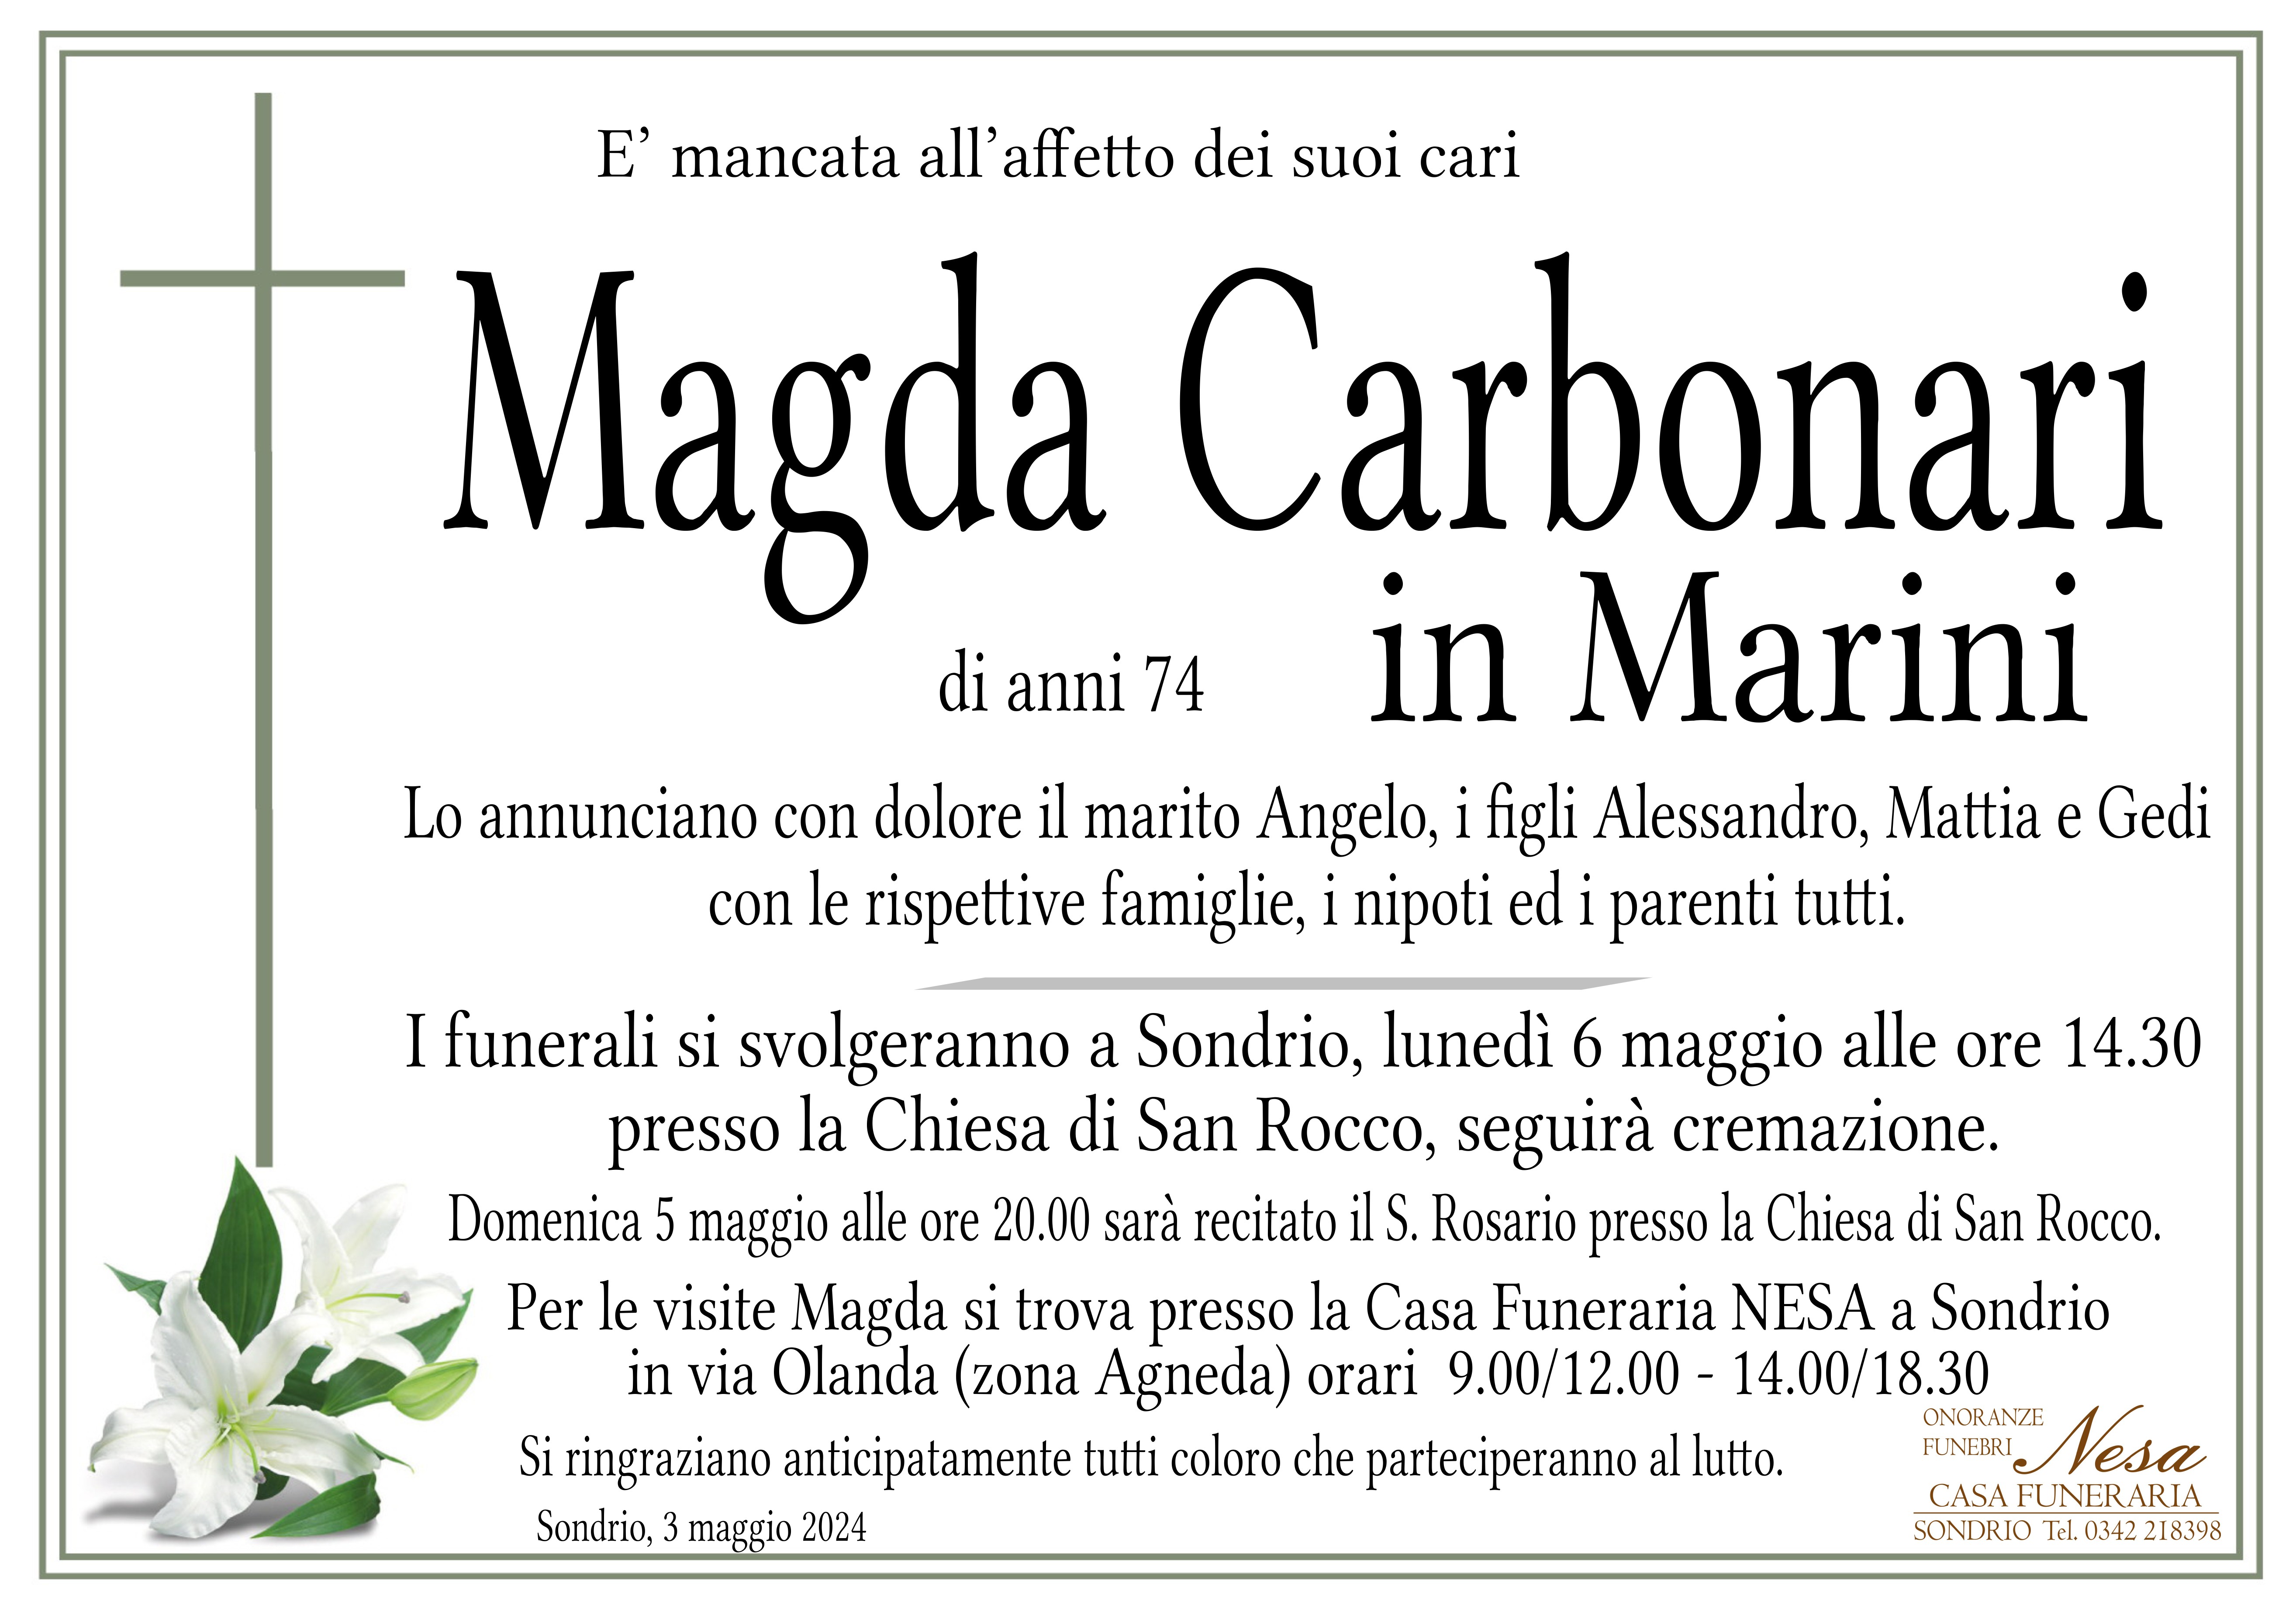 Necrologio Magda Carbonari in Marini